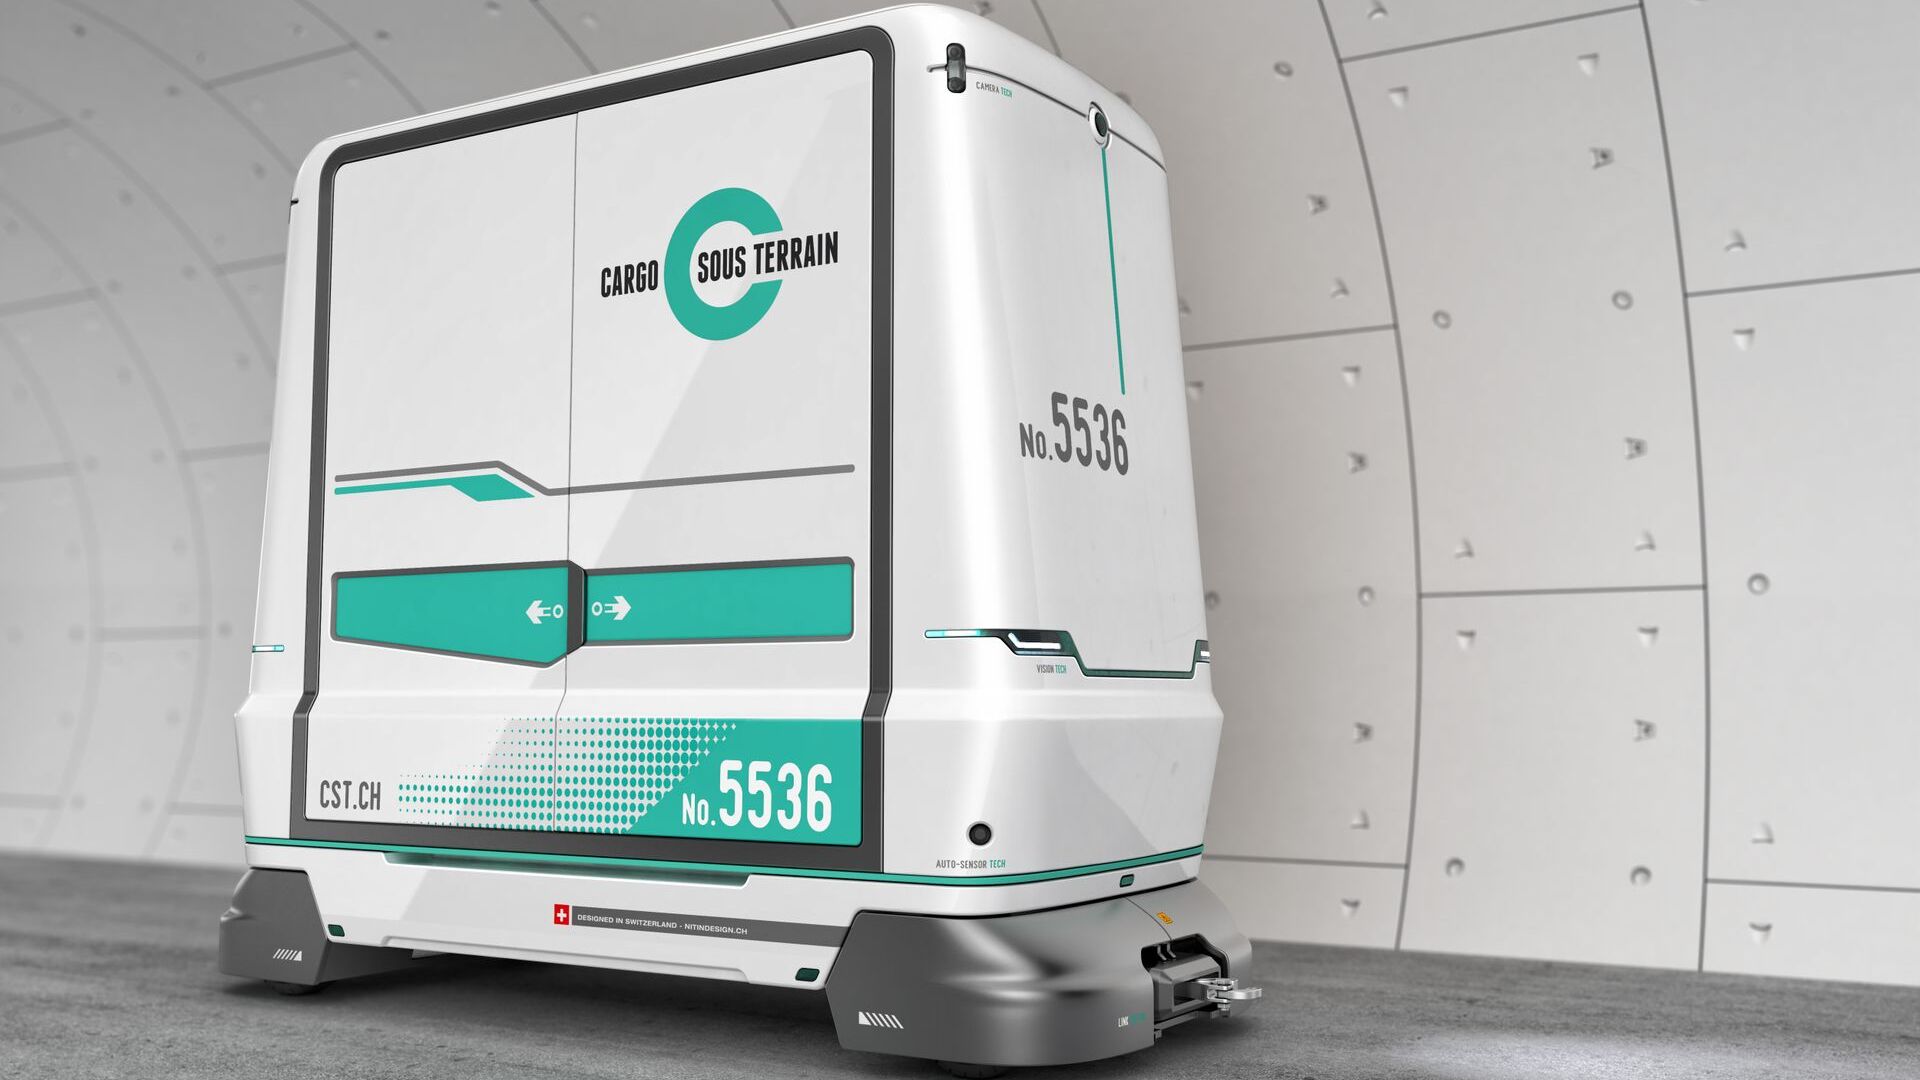 Un des véhicules de transport qui sera utilisé par Cargo Sous Terrain en Suisse